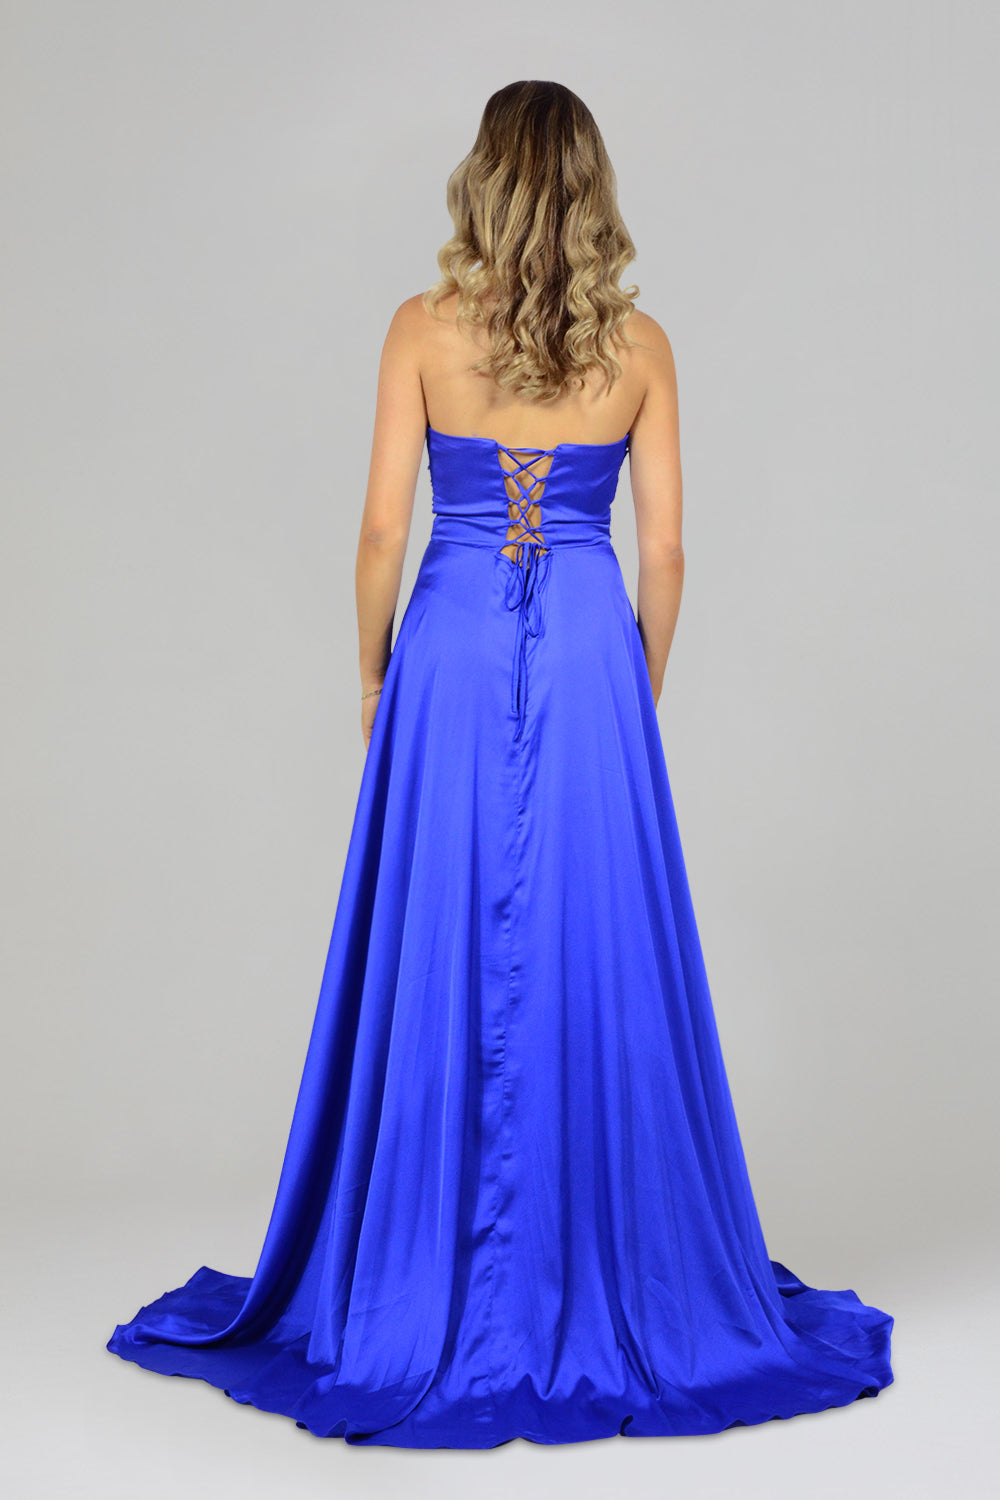 custom royal blue formal ball dresses perth australia envious bridal & formal